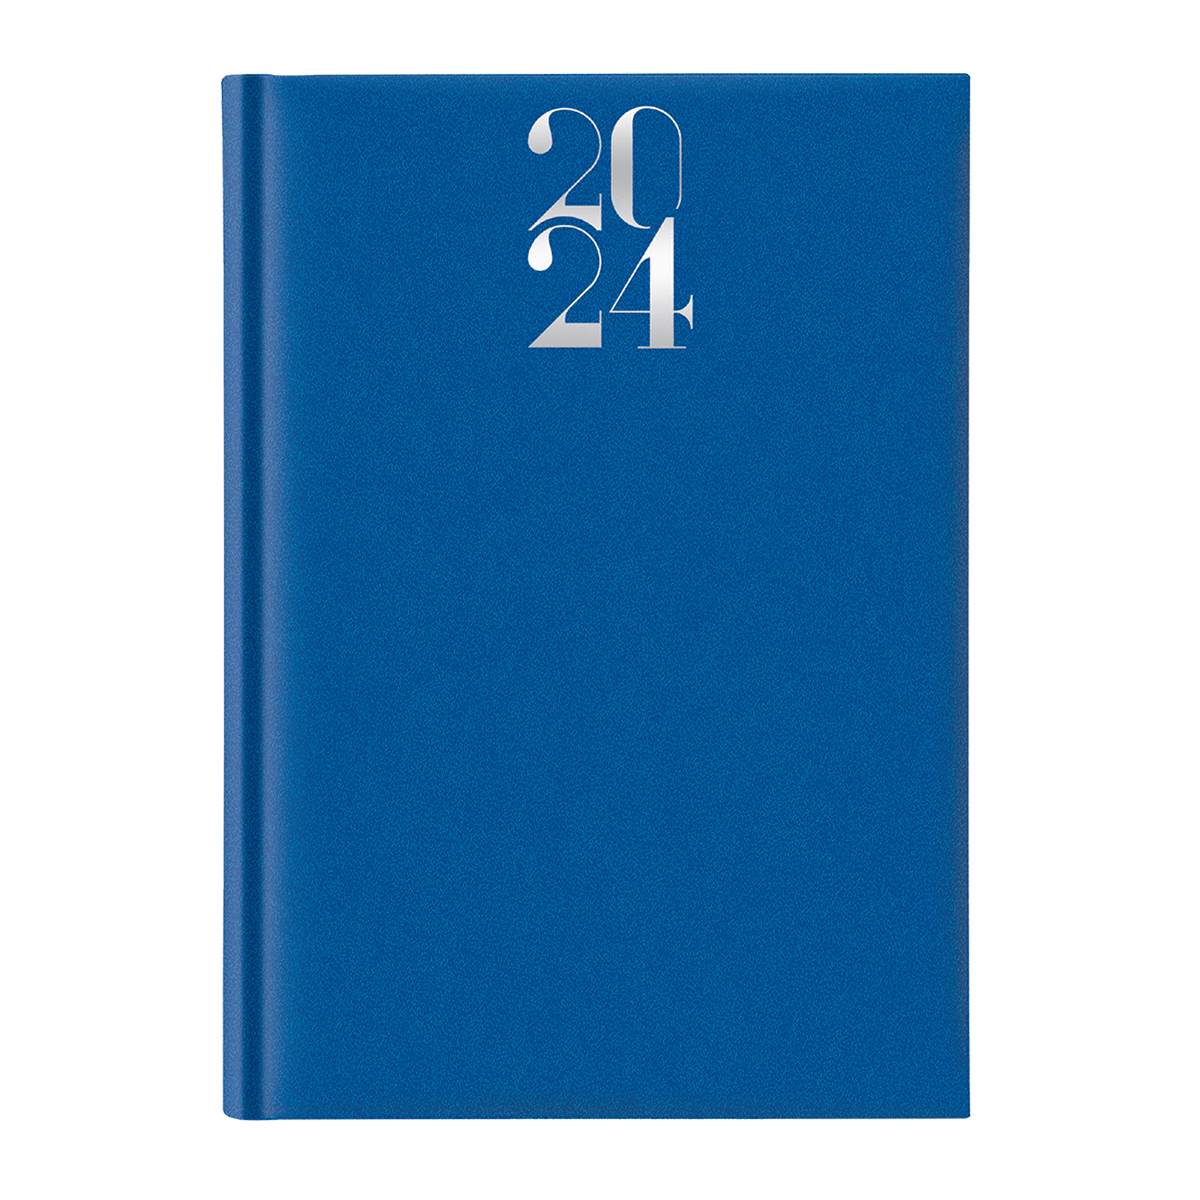 Agenda datata 2024, A5 ArtiLux, hartie ivory, coperta albastru royal EJ241118